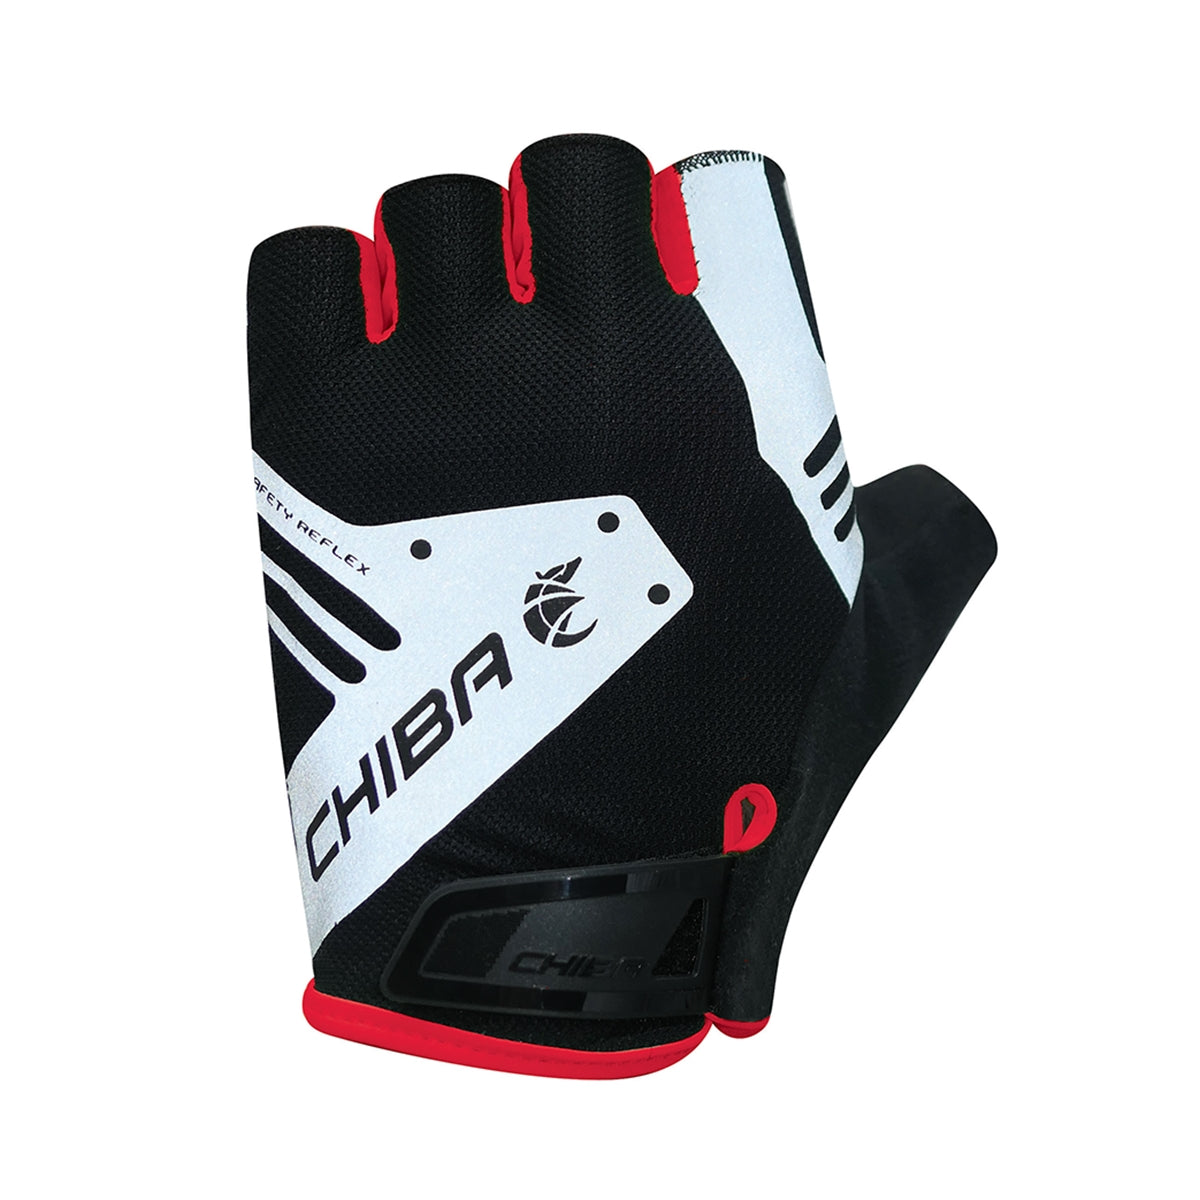 Air Plus Reflex Glove